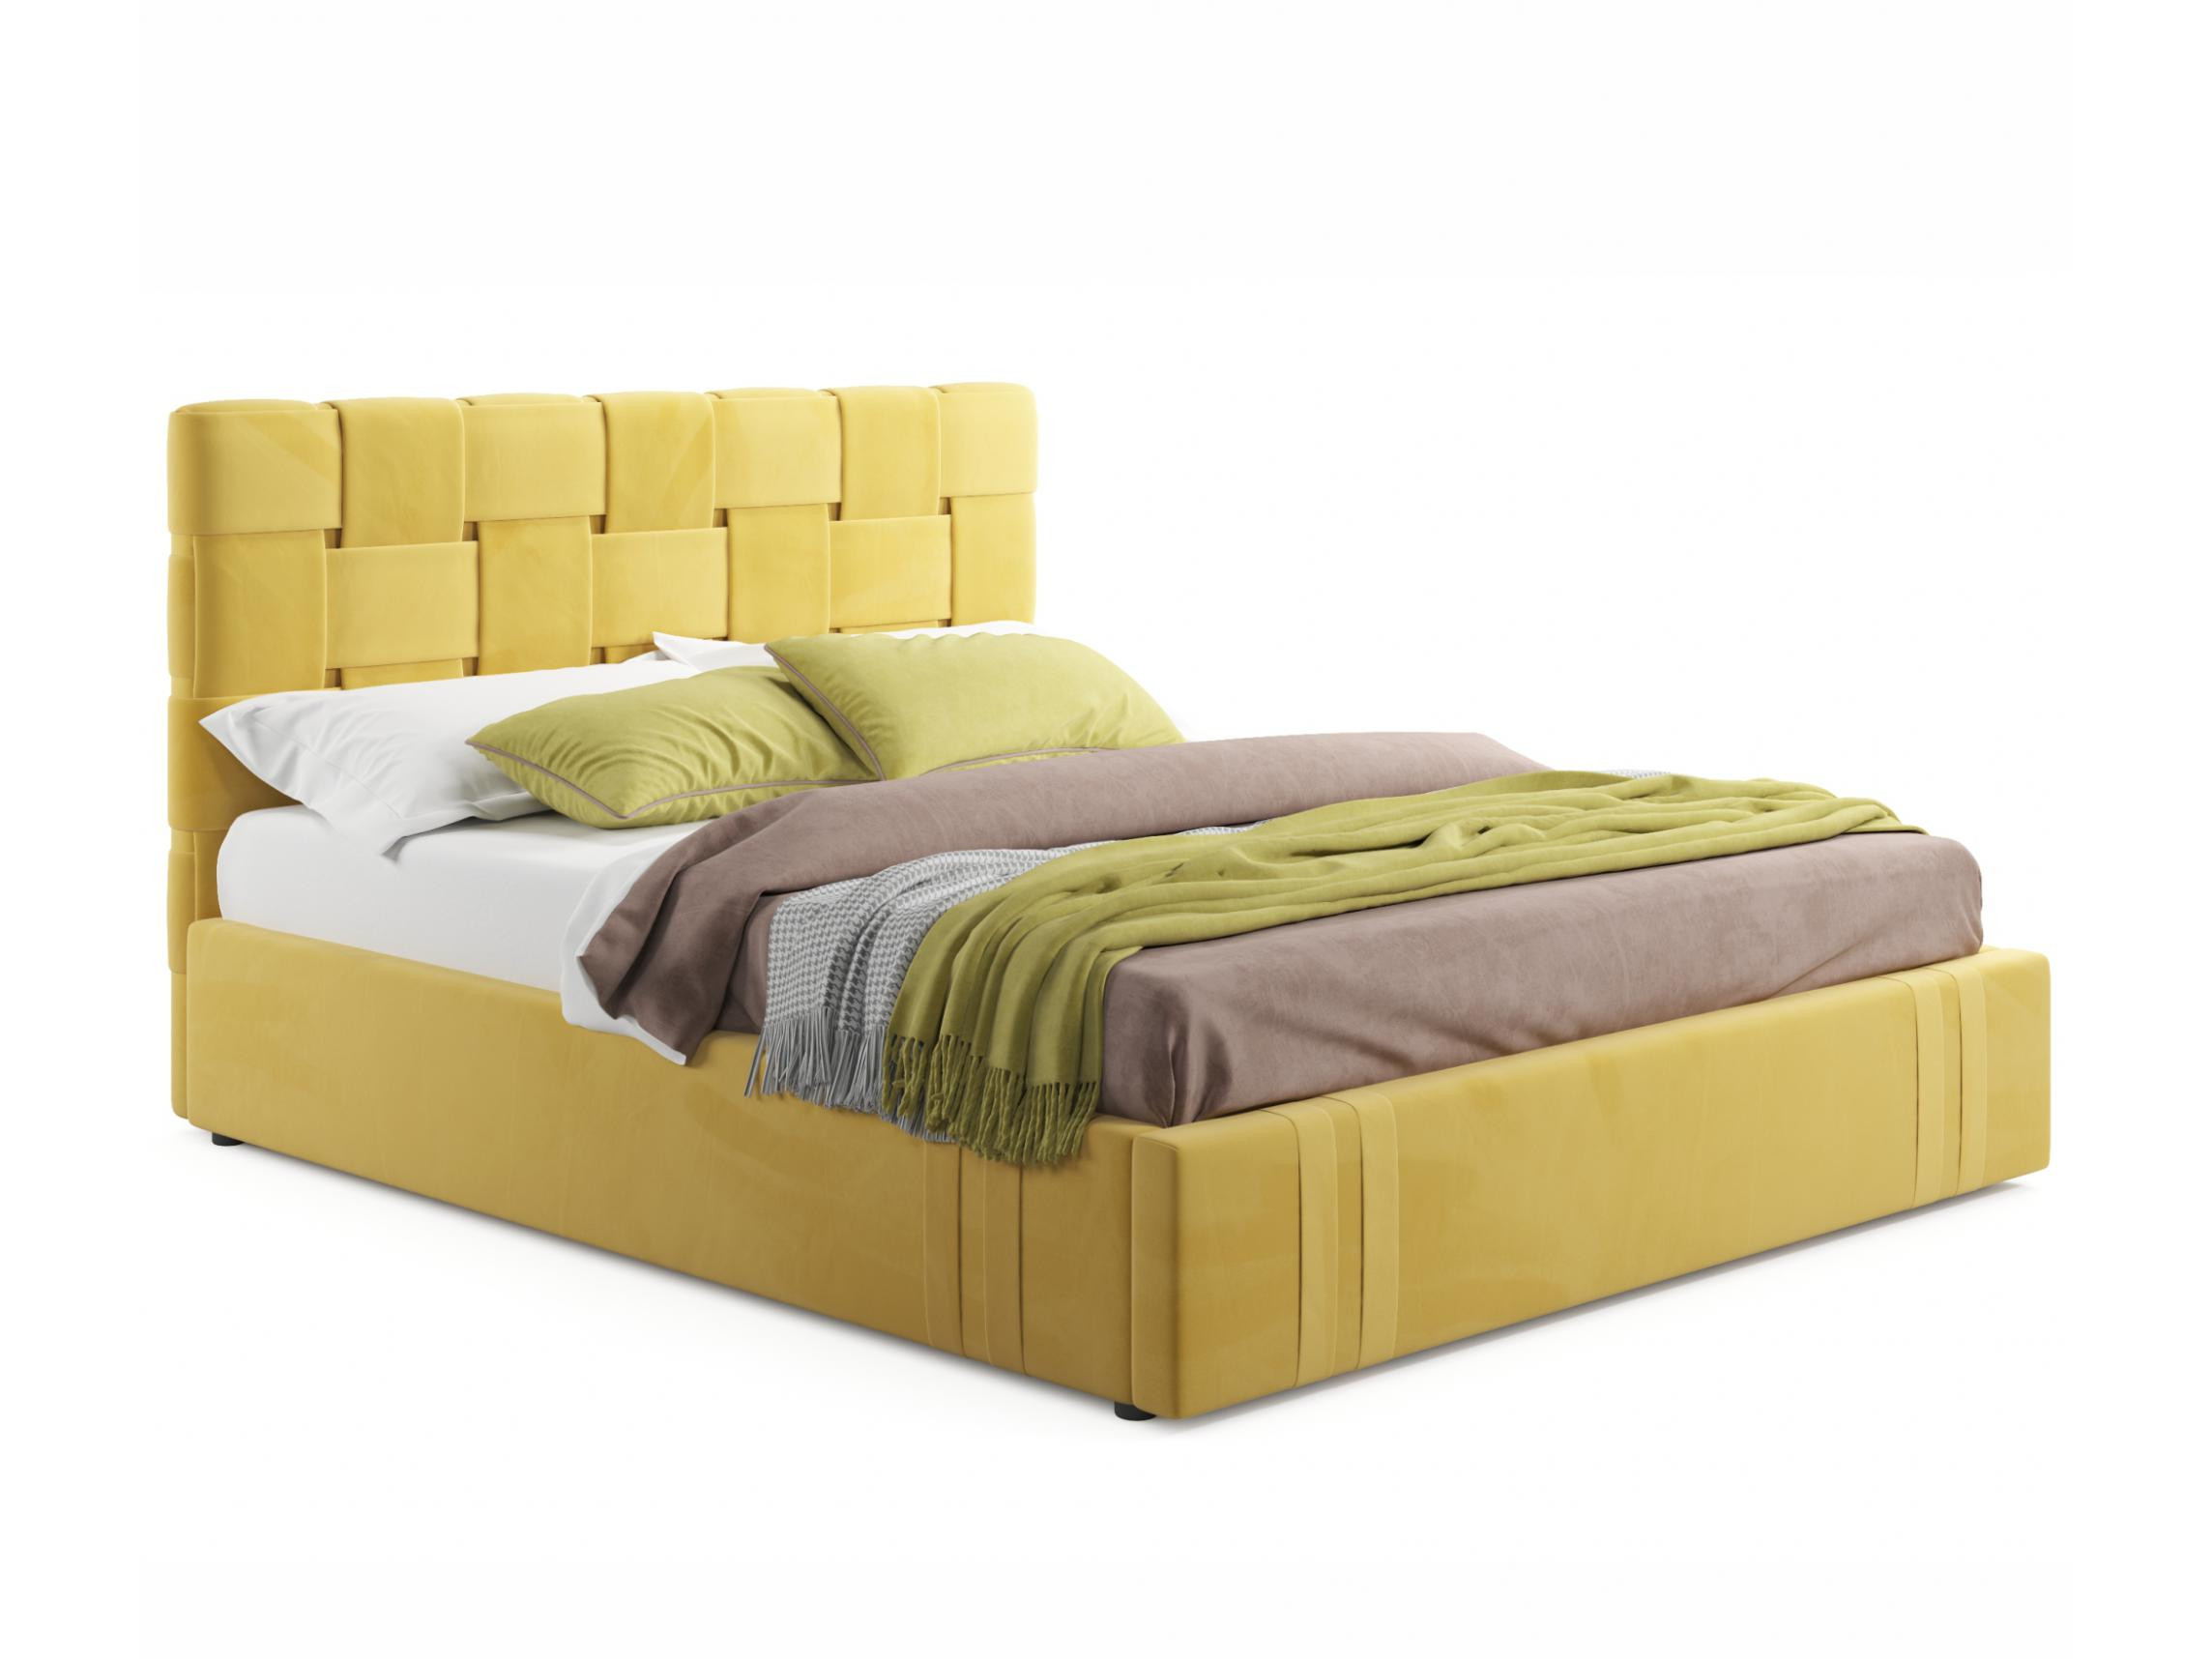 Мягкая кровать Tiffany 1600 желтая с подъемным механизмом желтый, Желтый, Велюр, ДСП мягкая кровать tiffany о 1600 беж с подъемным механизмом бежевый